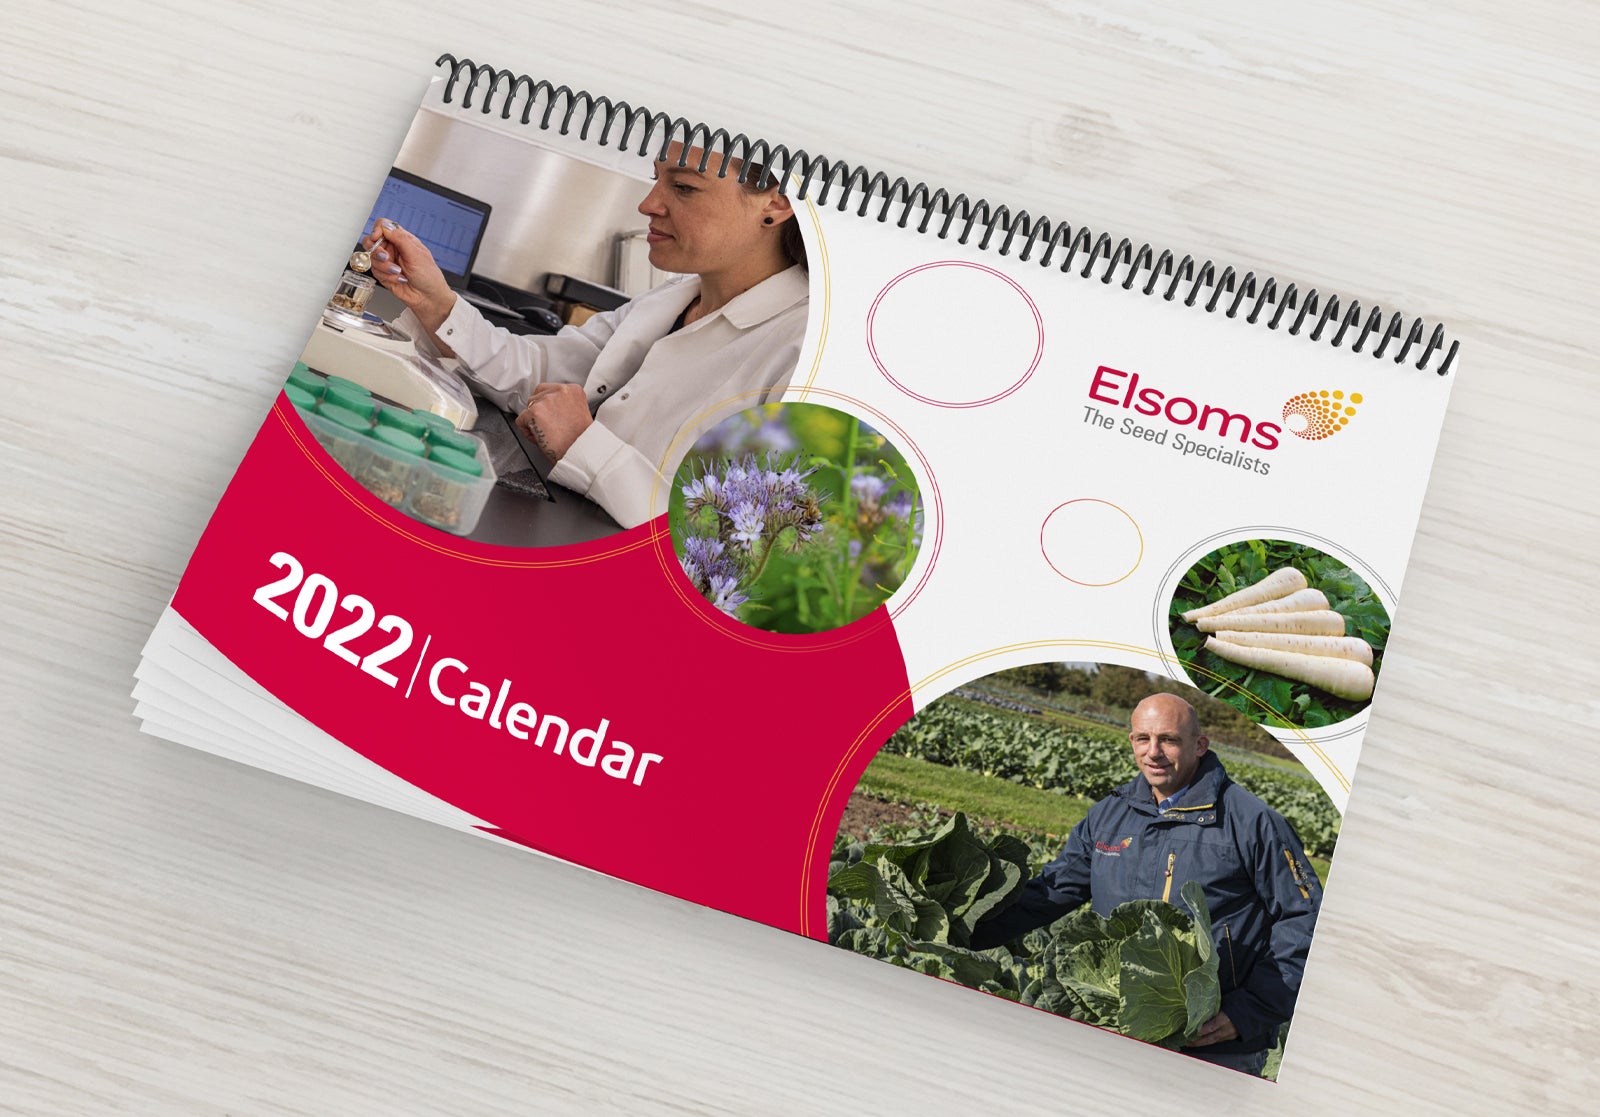 Bespoke calendars for 2023